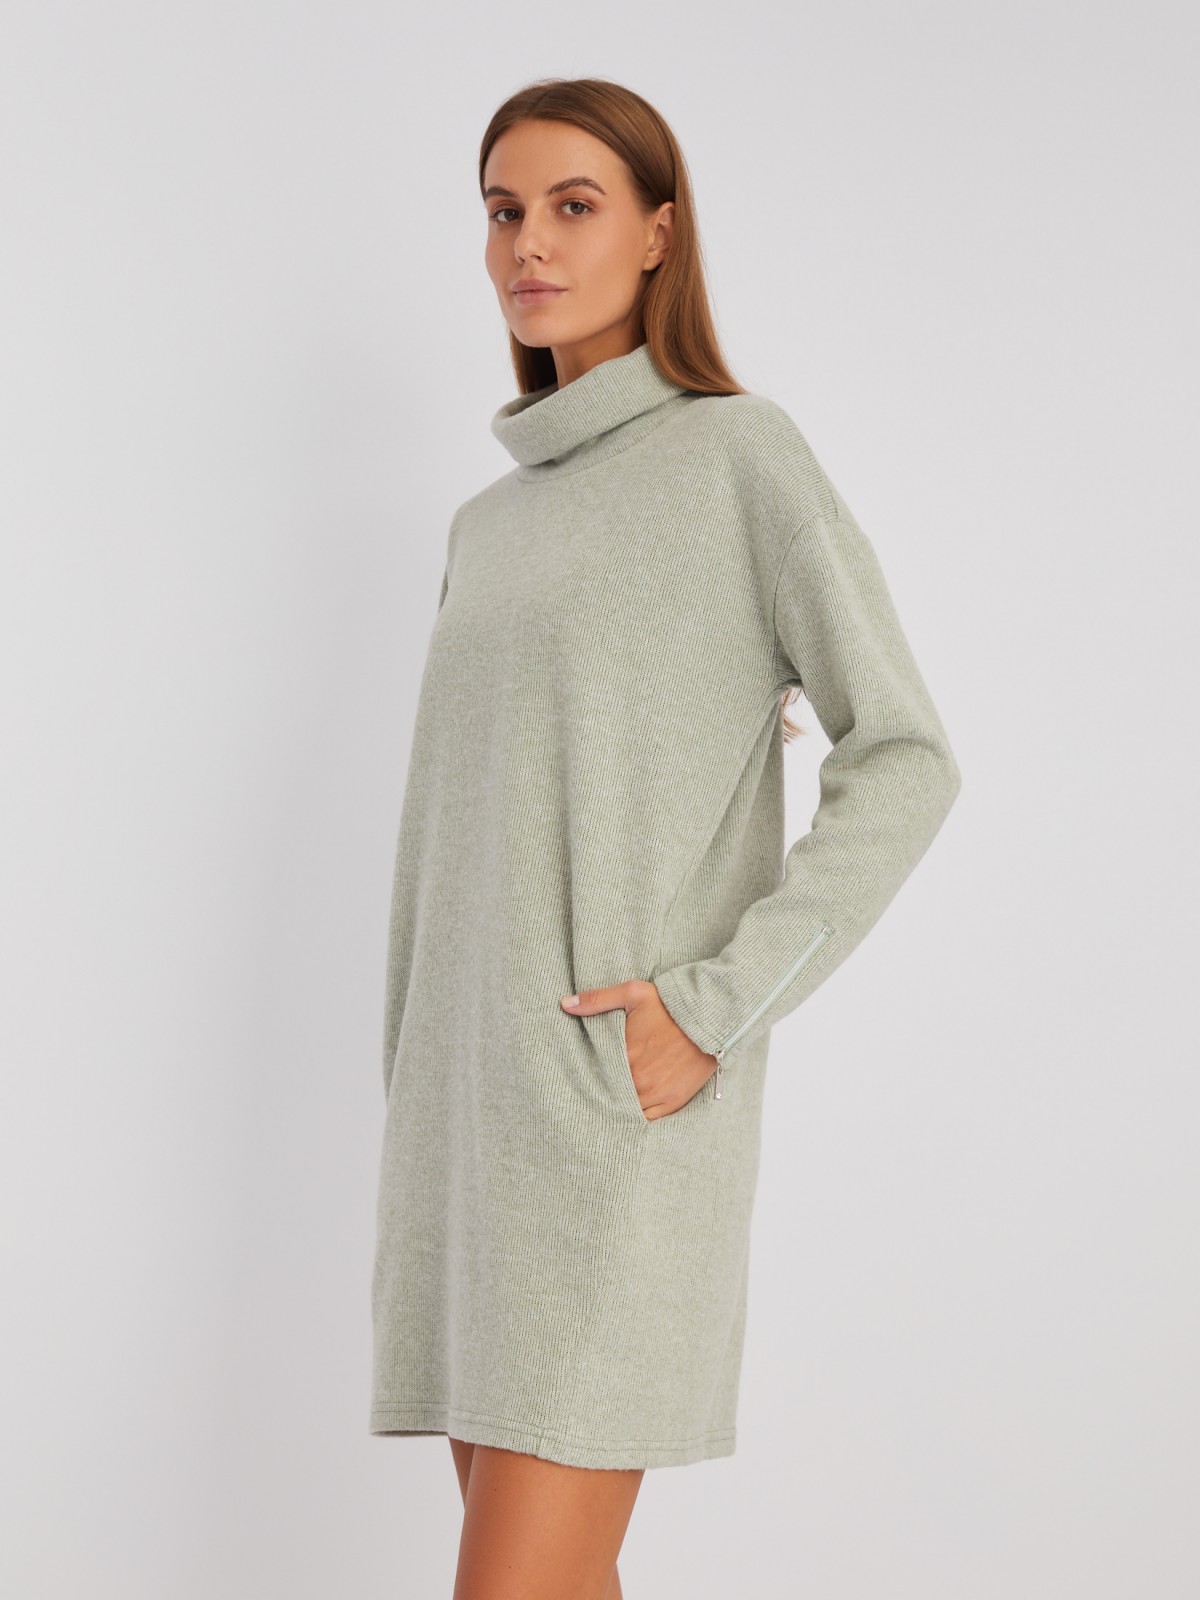 Трикотажное платье-свитер с высоким горлом и акцентом на манжетах